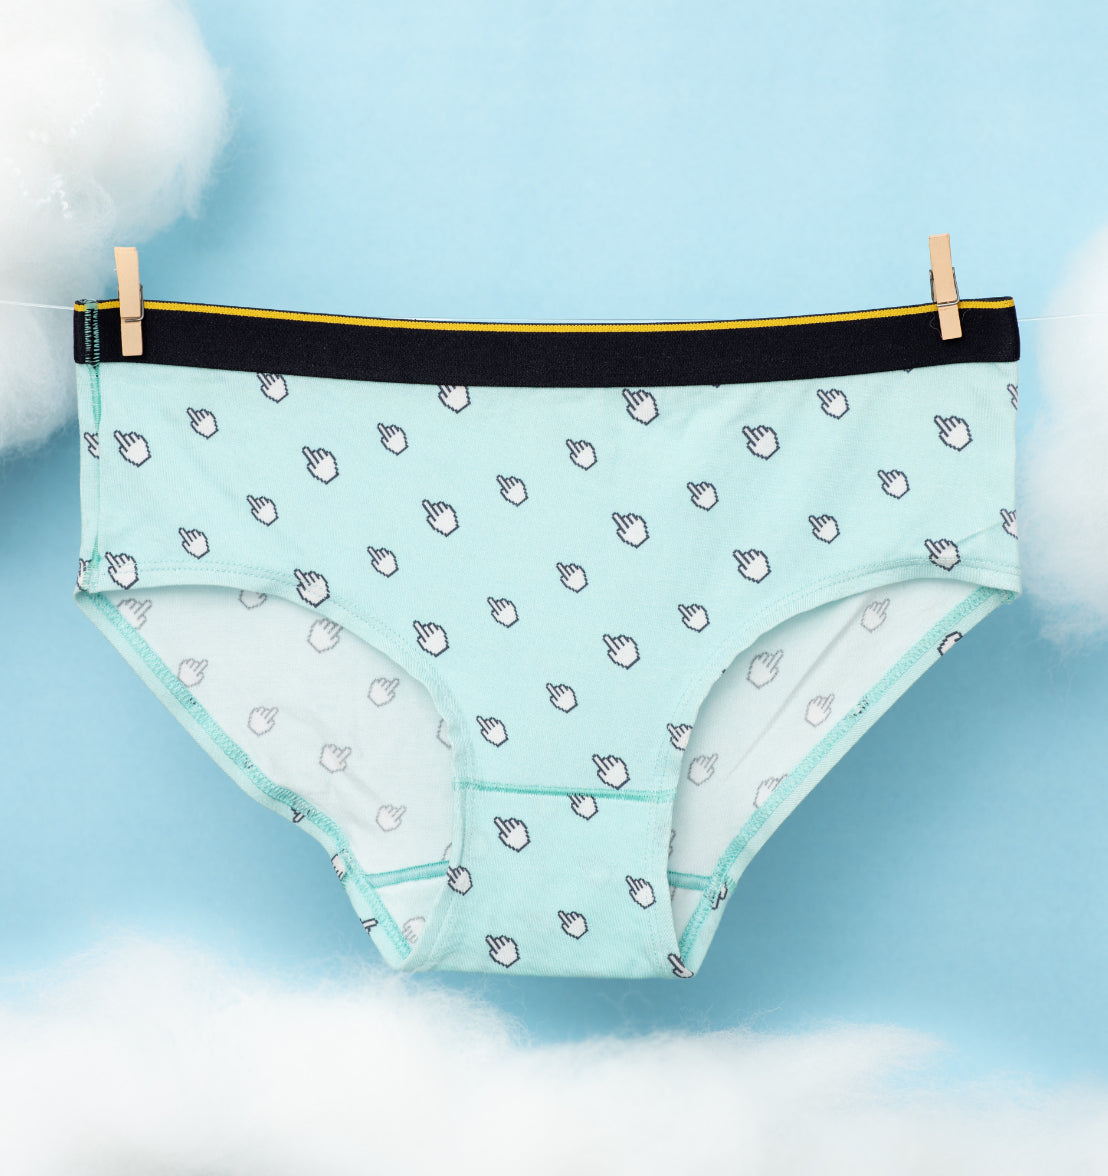 Buy stylish Briefs Underwear For Men online - Bummer